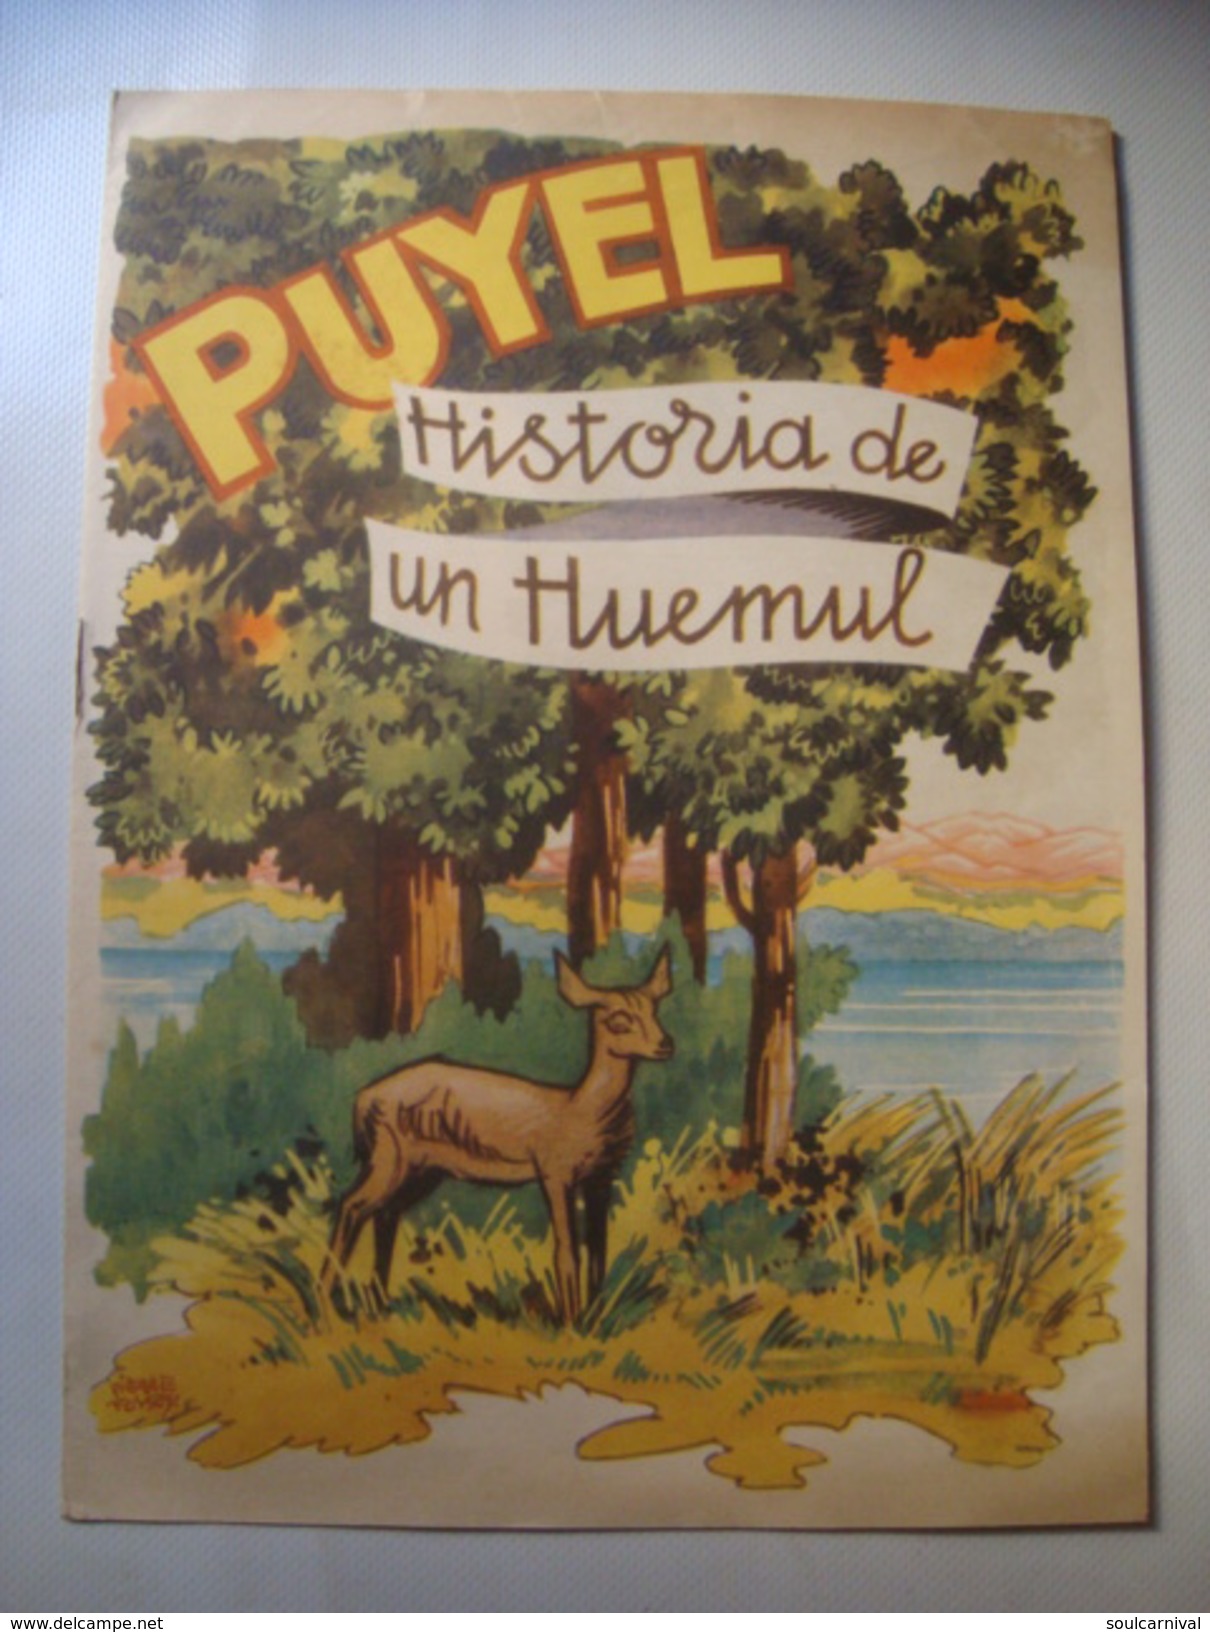 PUYEL. HISTORIA DE UN HUEMUL - ARGENTINA, DIRECCION DE TURISMO Y PARQUES, 1950 APROX. BY PIERRE FOSSEY. - Children's